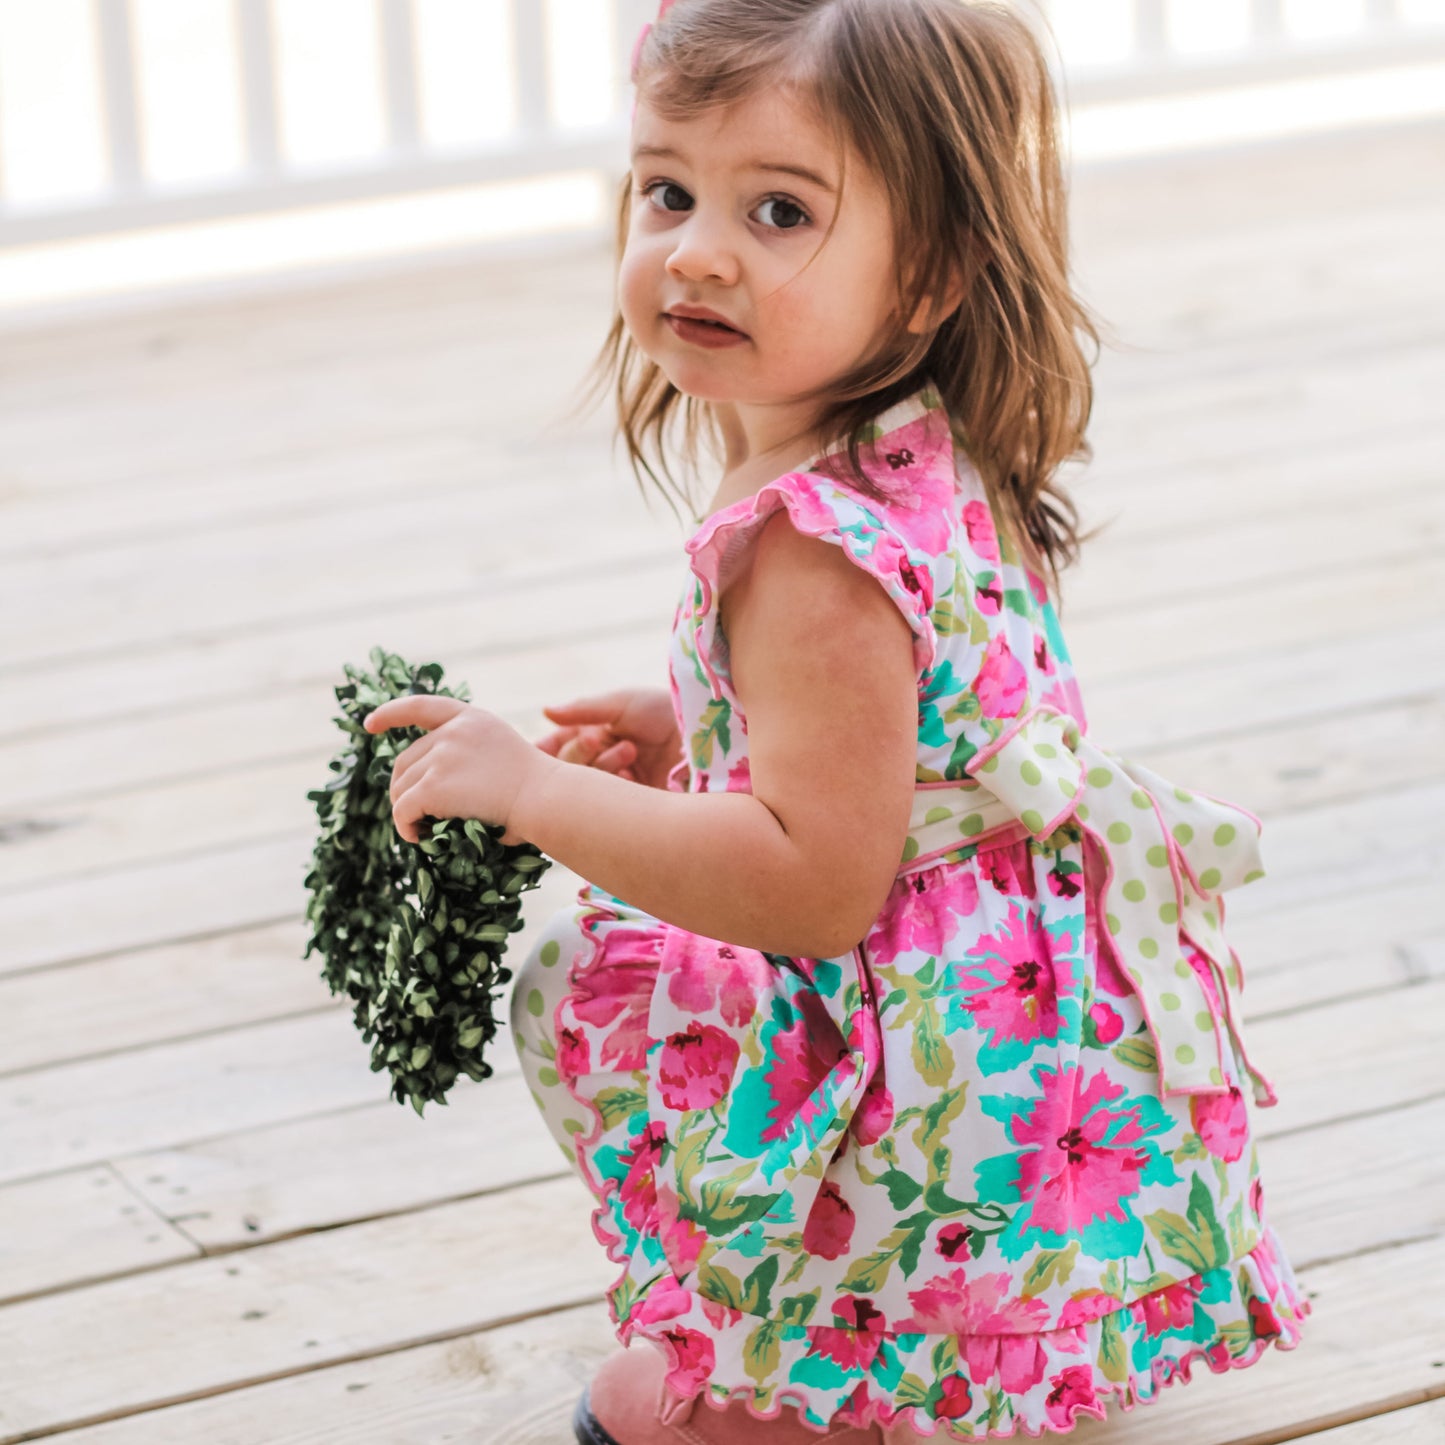 AnnLoren Little Girls Spring Floral Dress Polka Dot Capri Leggings